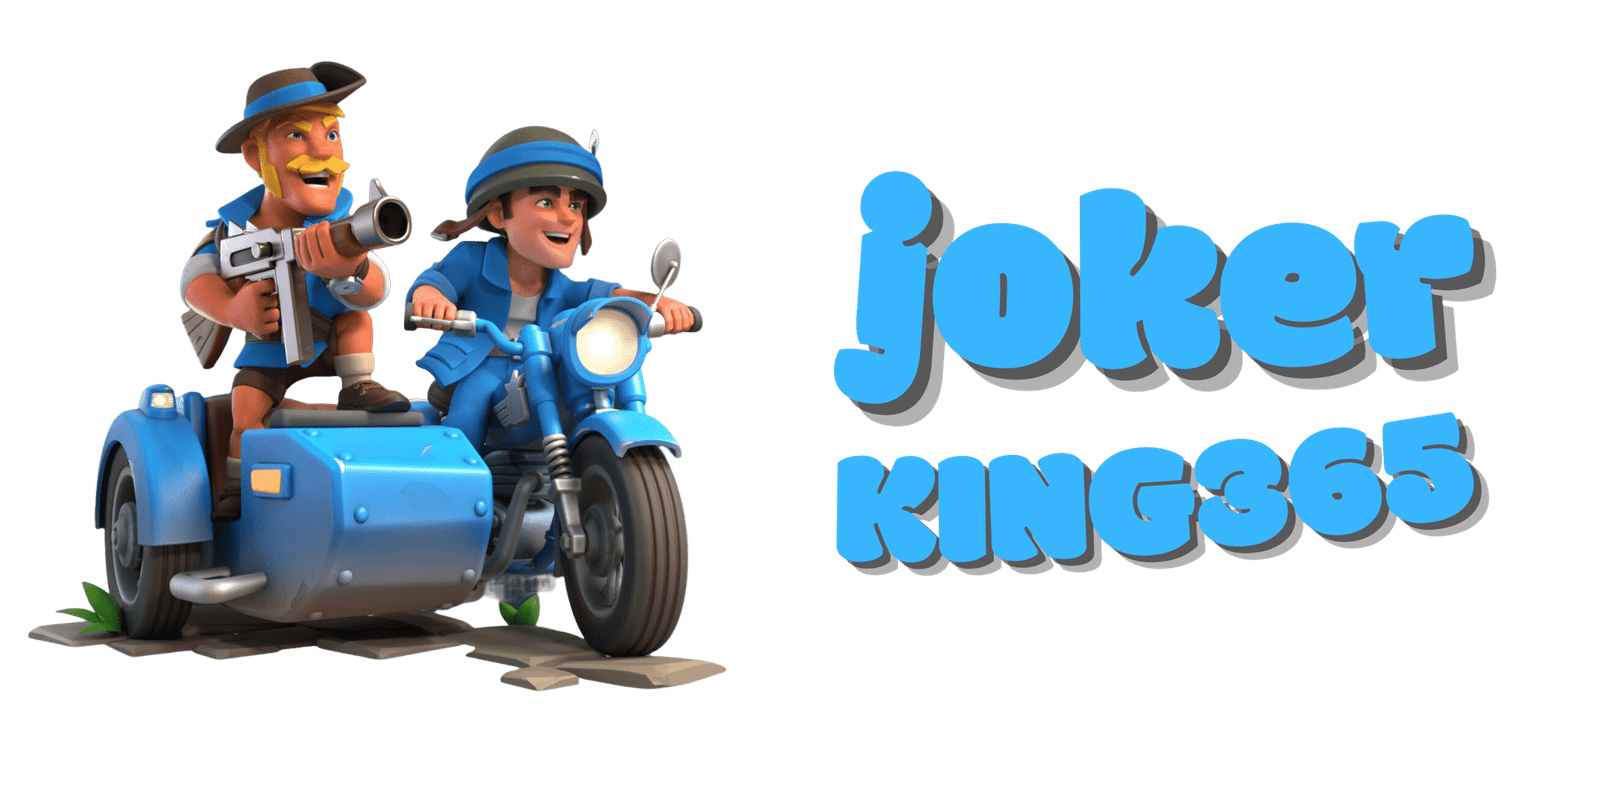 joker-king365-game